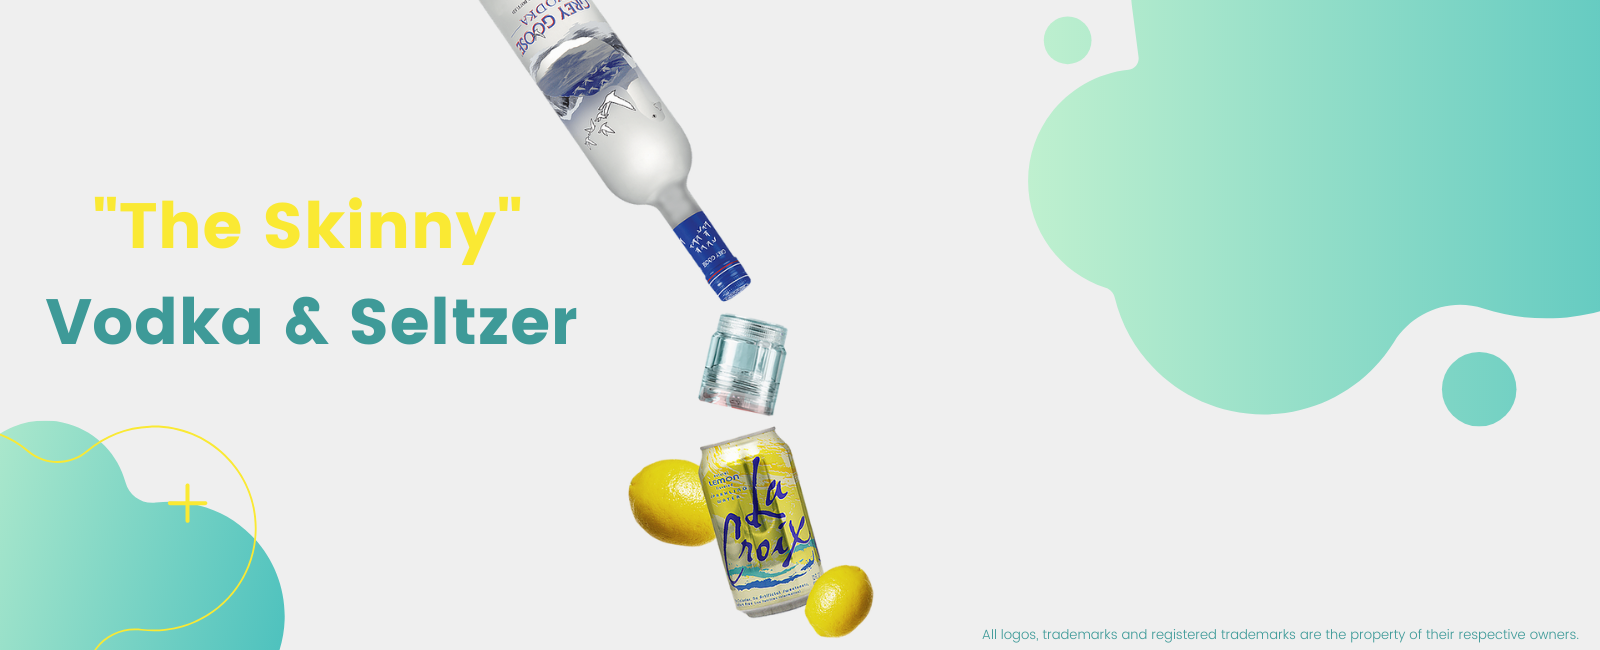 Vodka and Seltzer